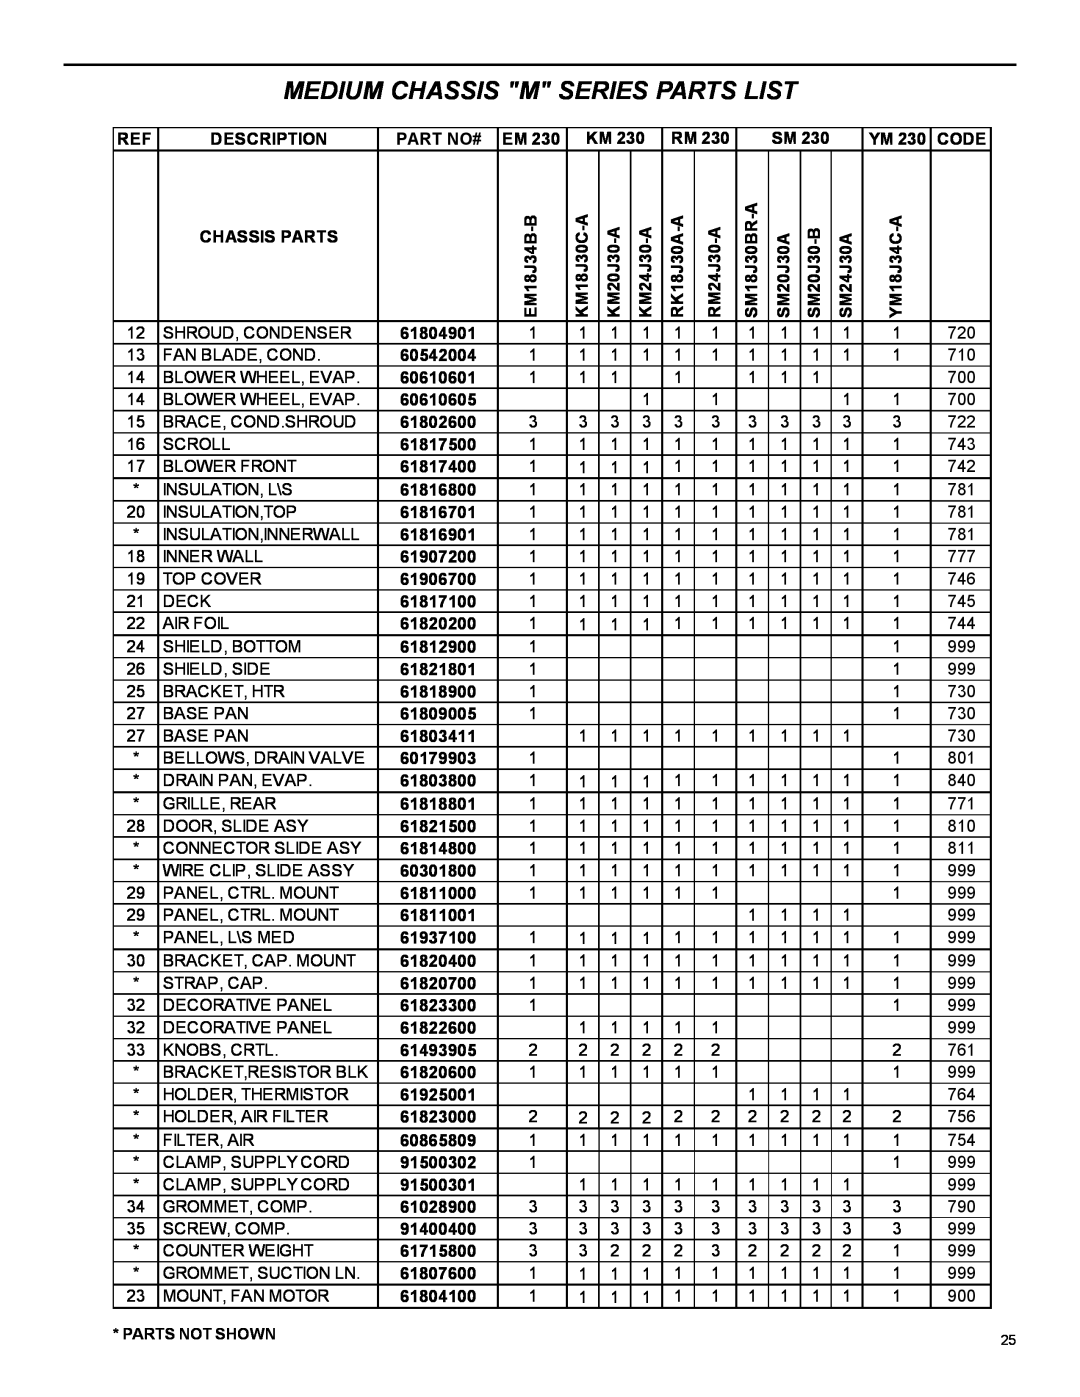 Friedrich 2004 manual Medium Chassis M Series Parts List, Description 